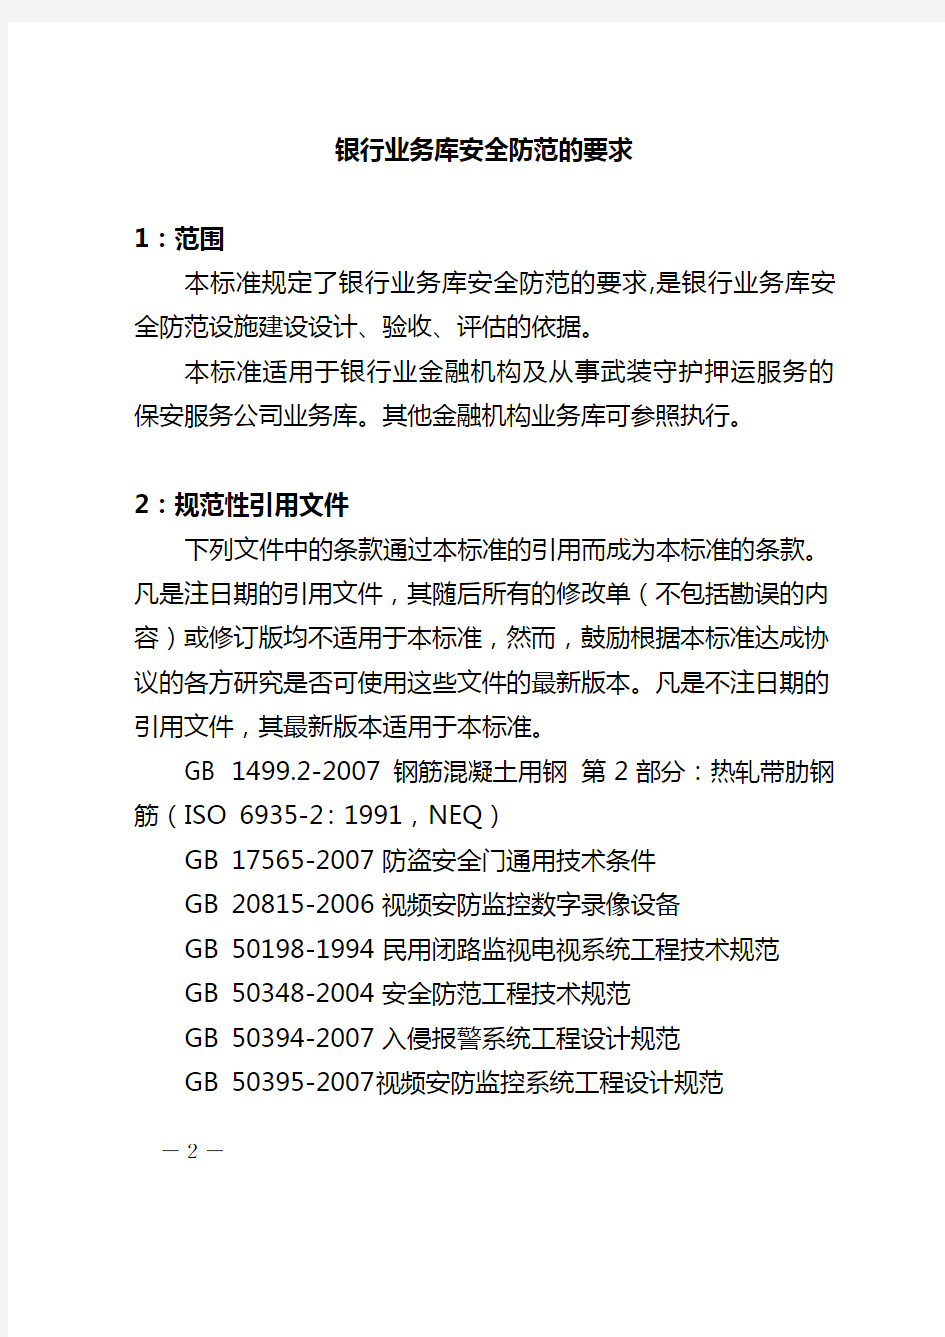 中华人民共和国公安部《银行业务库安全防范的要求(GA858-2010)》